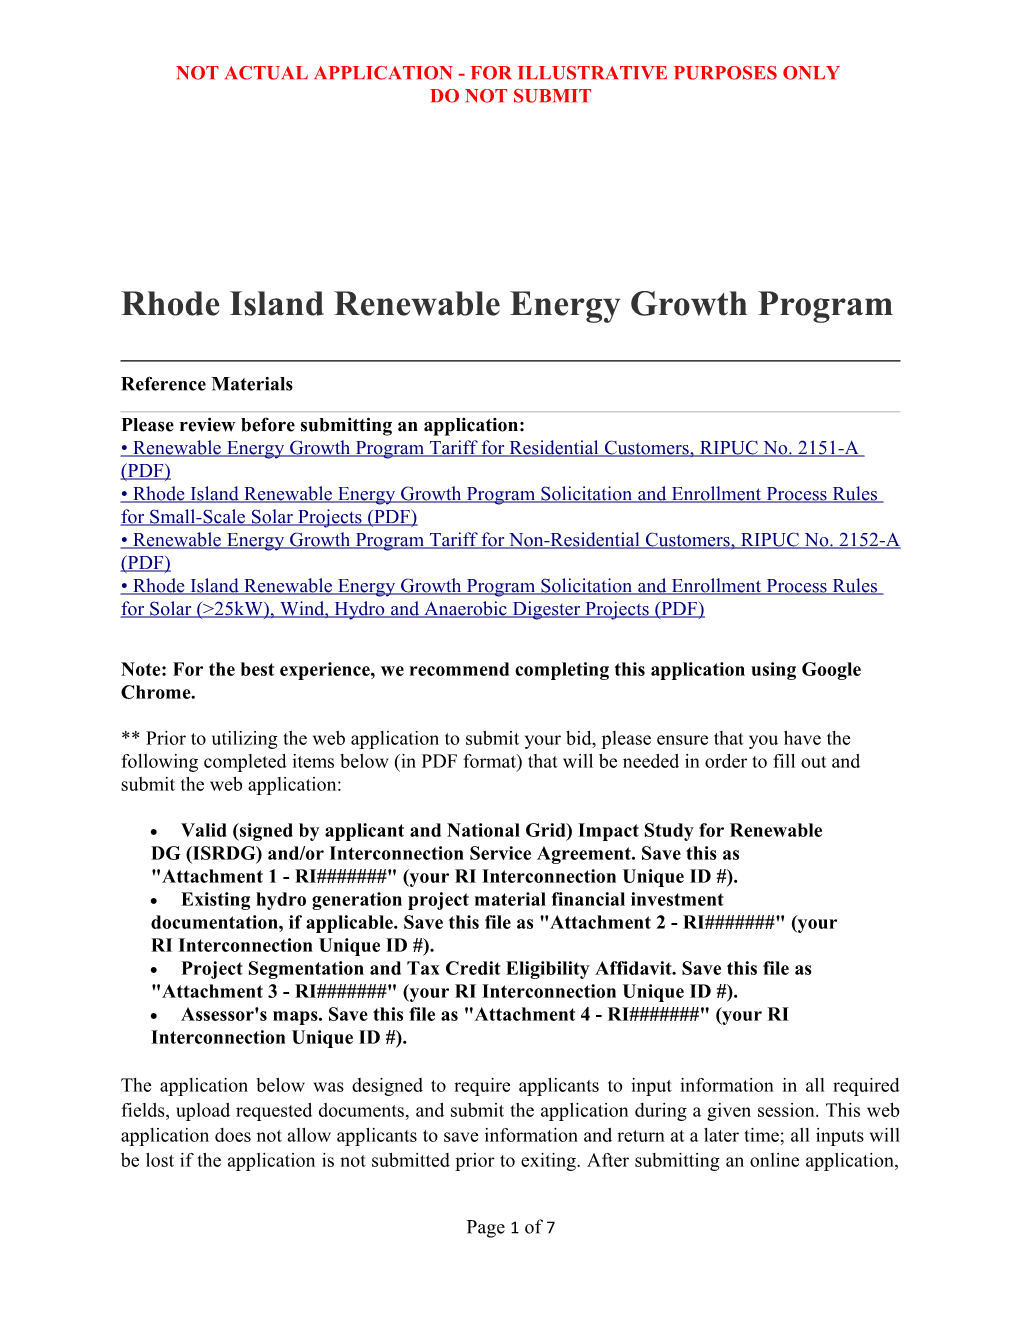 Rhode Island Renewable Energy Growth Program